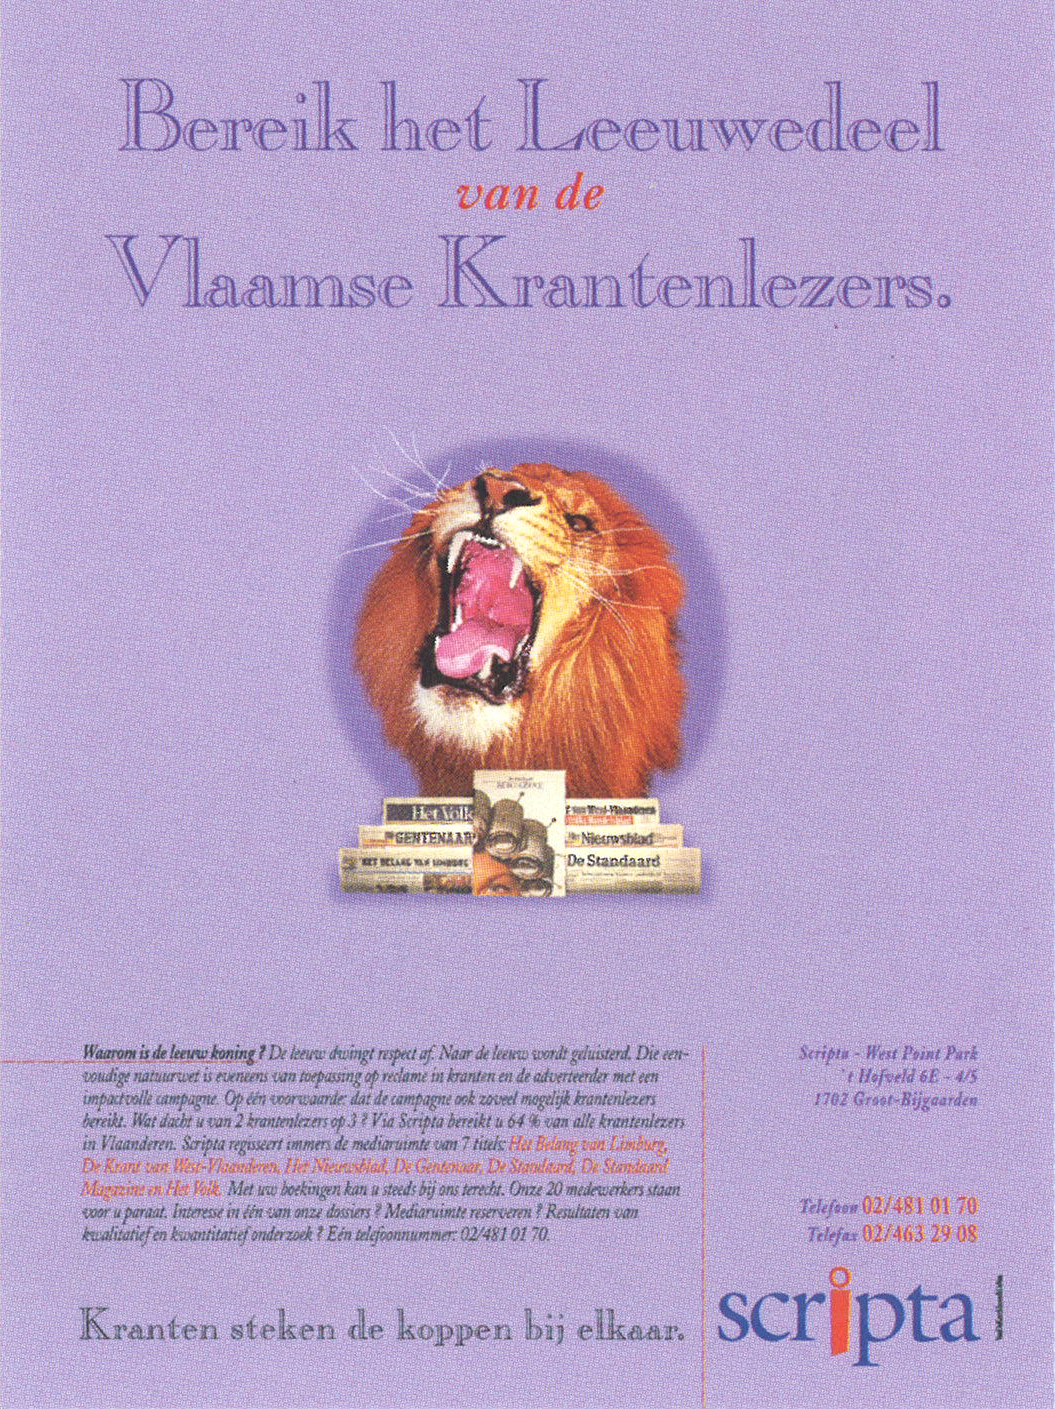 Scripta campaign by Vandekerckhove & Devos